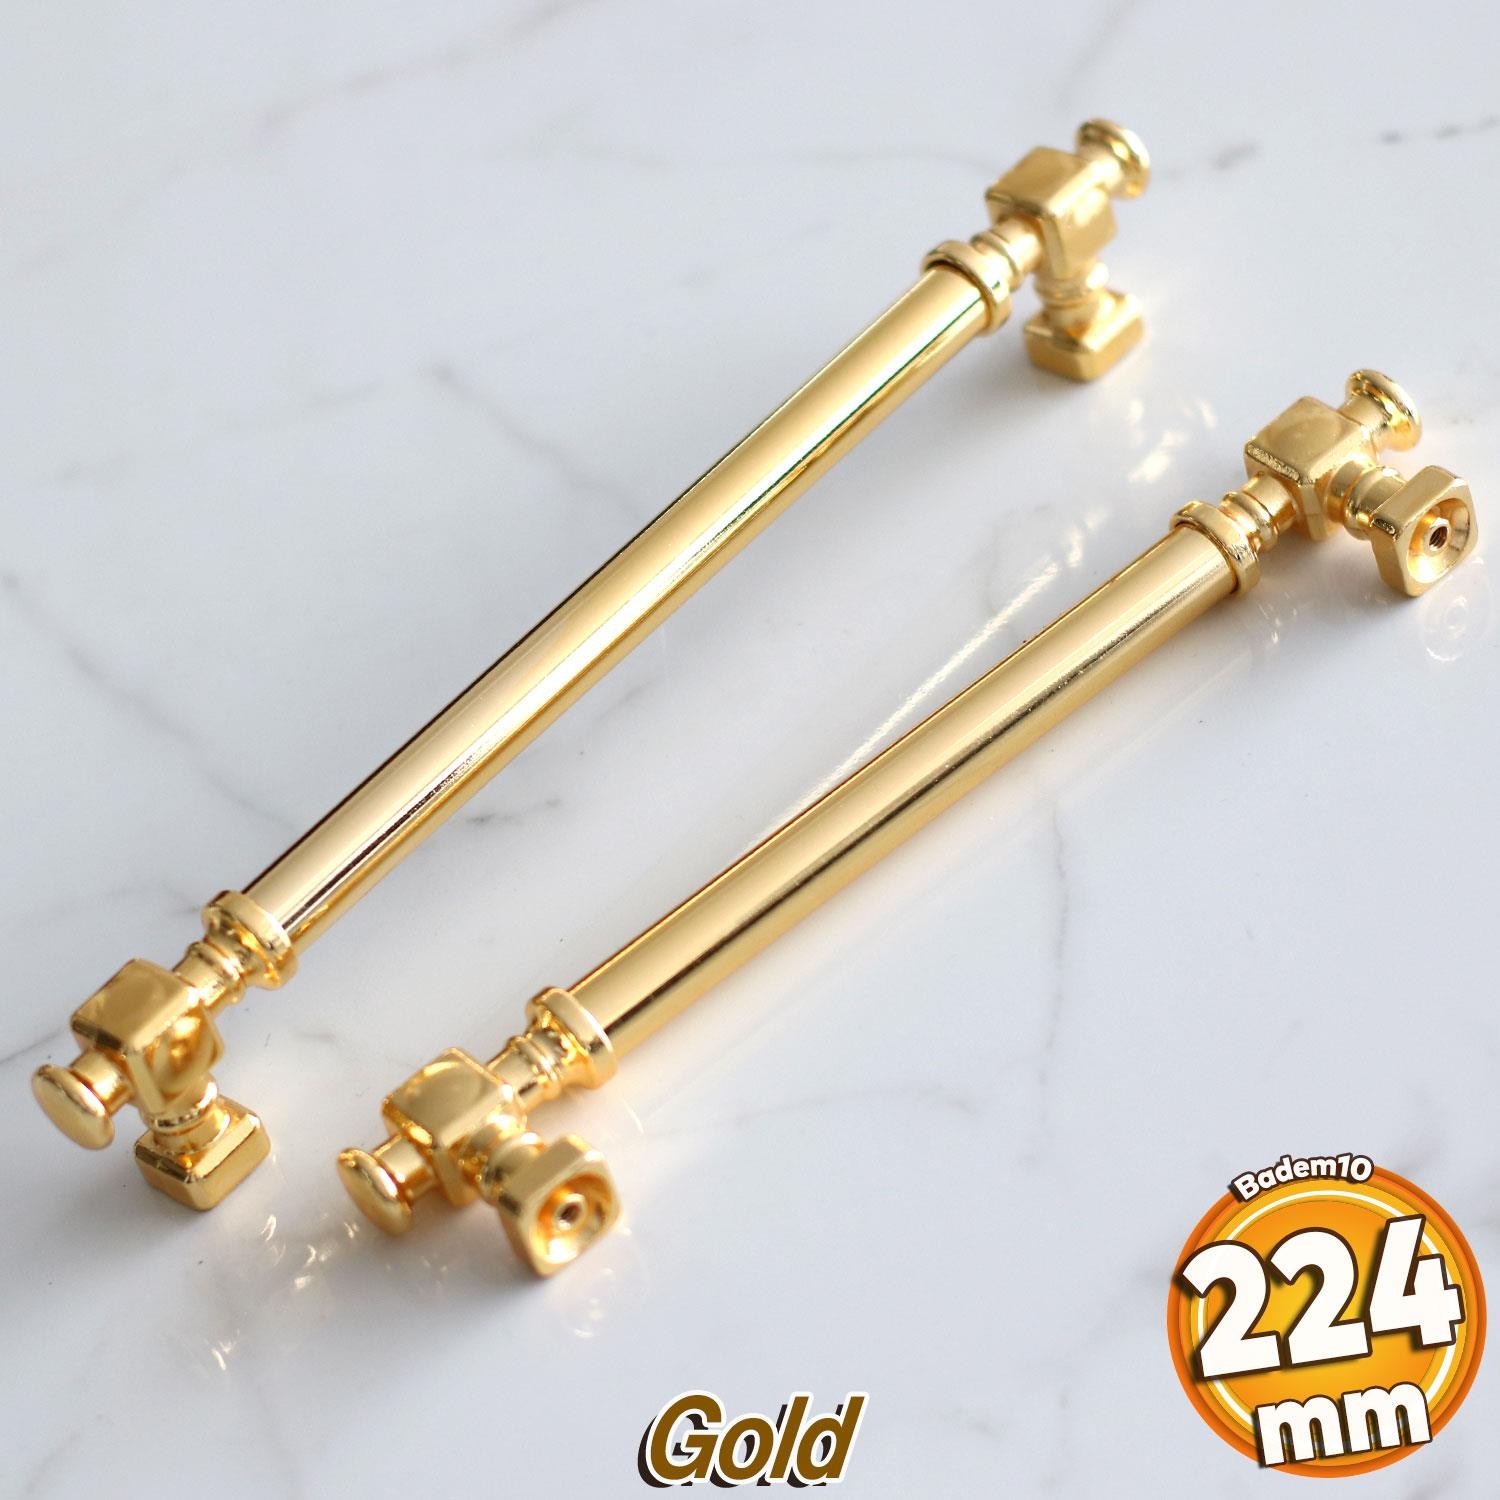 Talas Gold Altın Düz Metal Kulp 224 mm 22.4 cm Mobilya Çekmece Mutfak Dolabı Dolap Kulpları Kulb